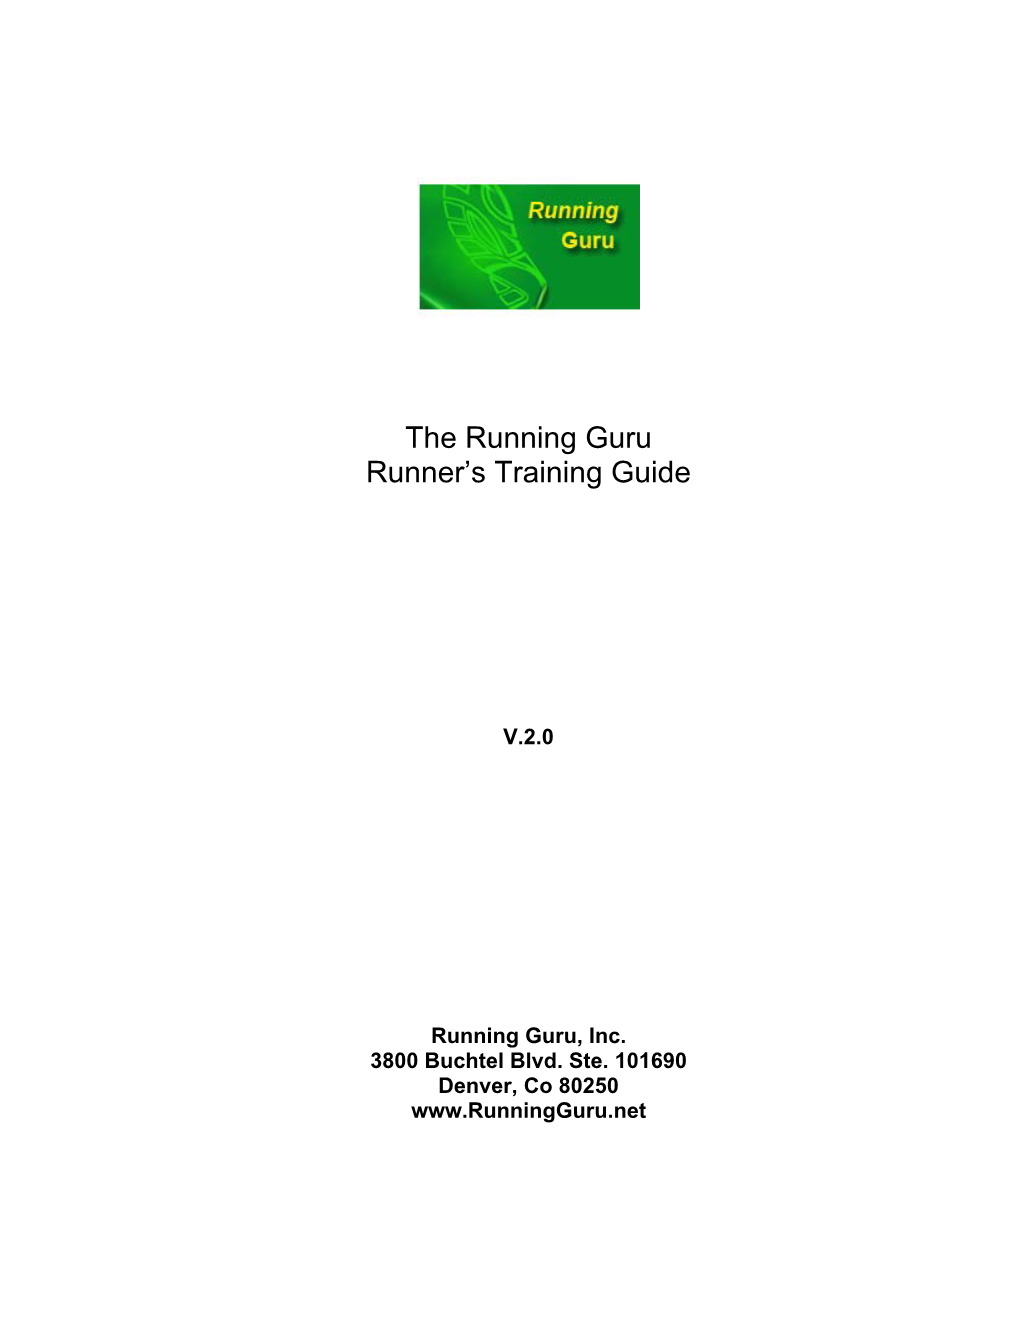 The Running Guru Runner's Training Guide